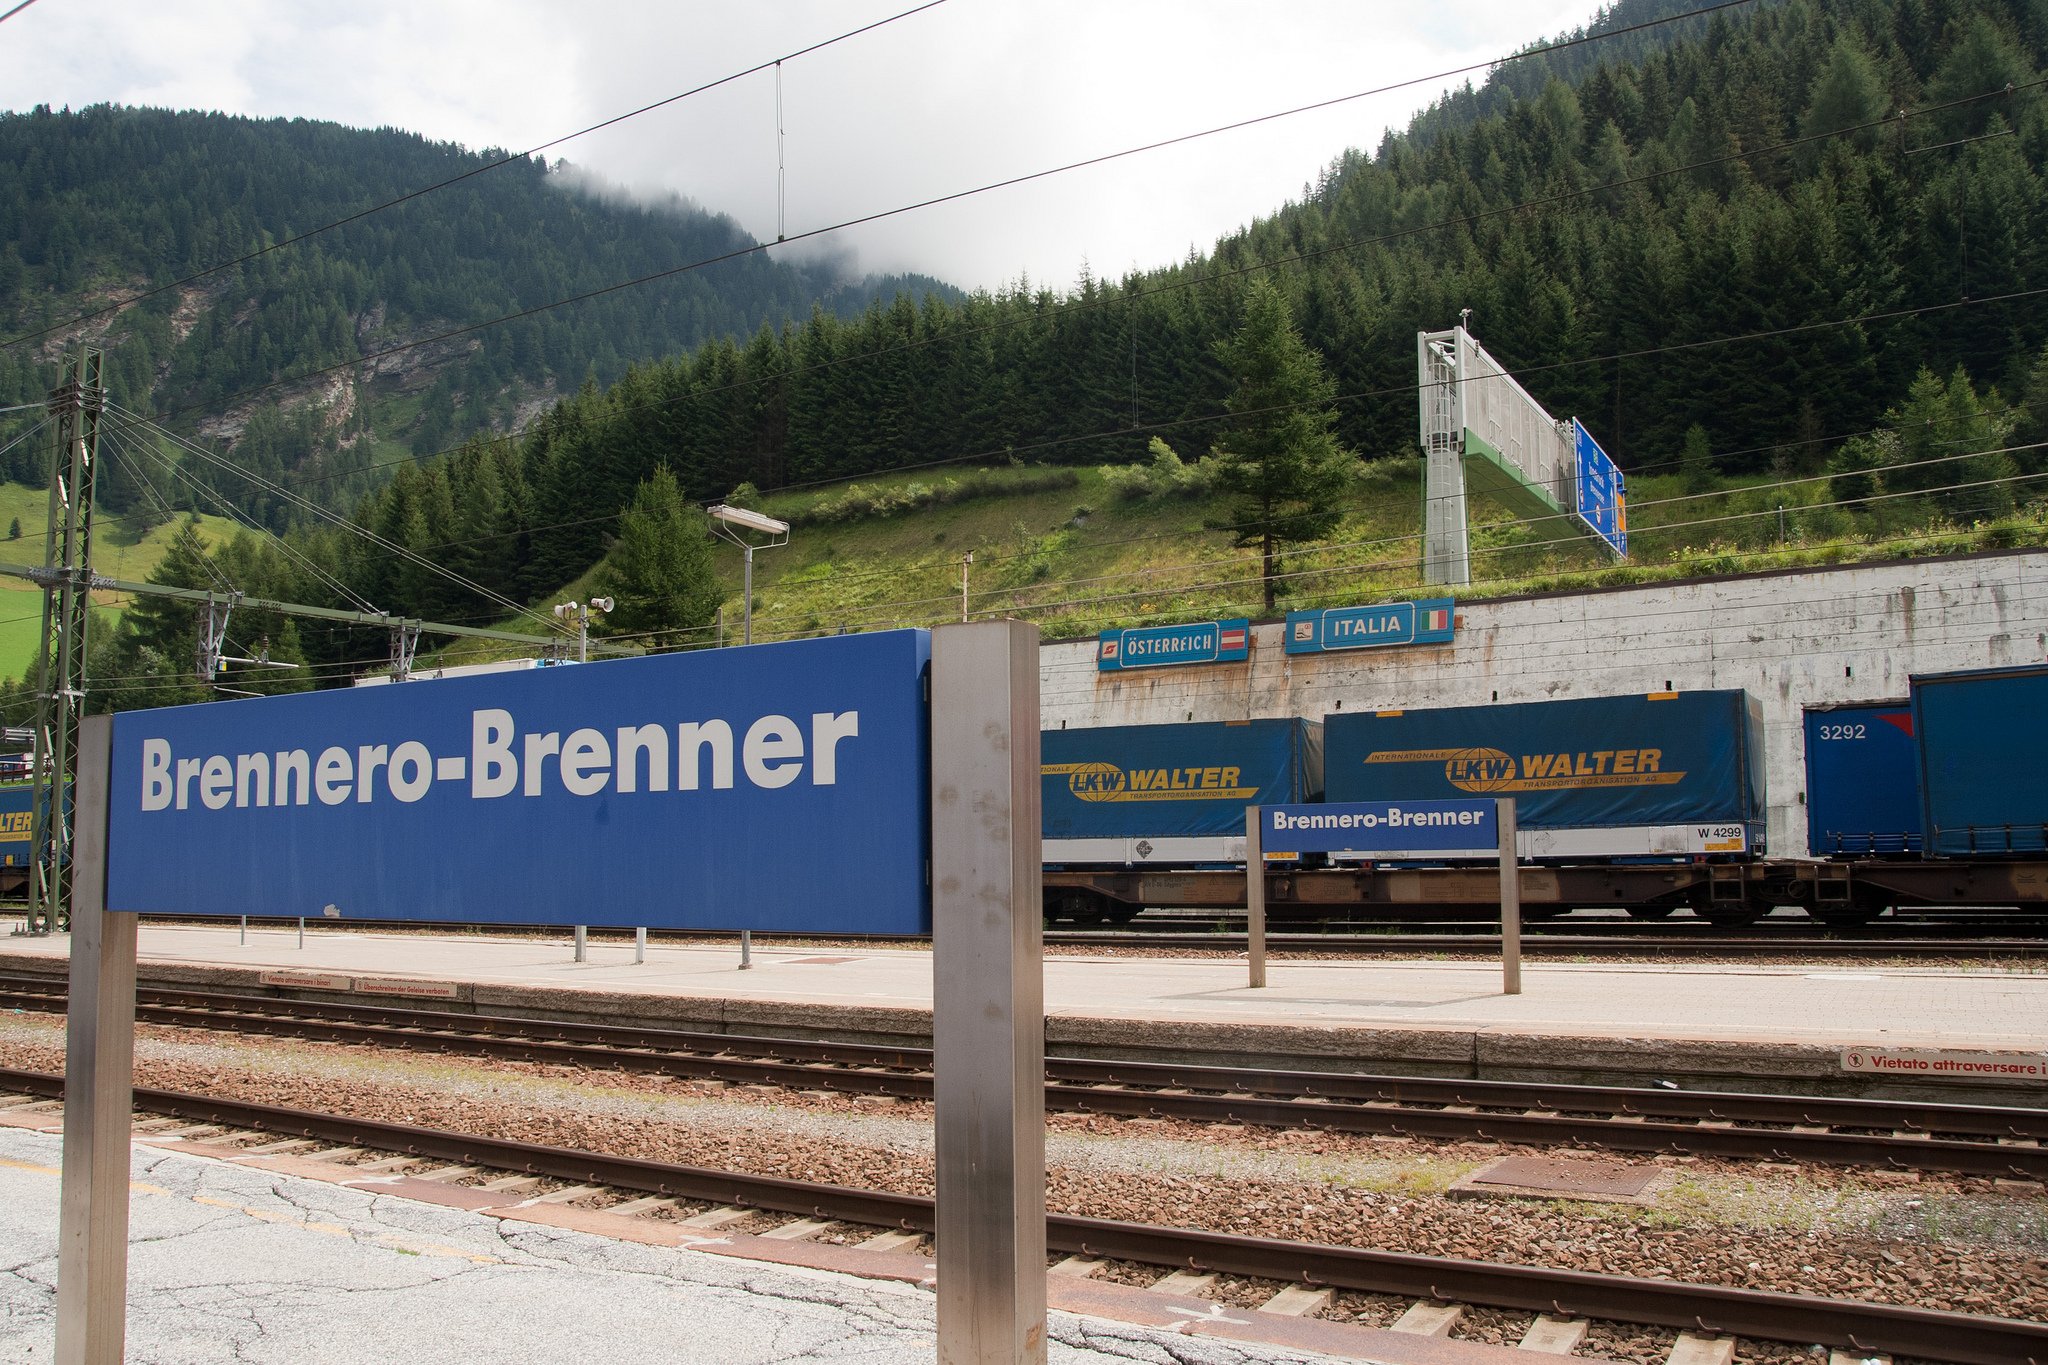 Ιταλία προς Κομισιόν: Η κατασκευή φράχτη από την Αυστρία συνάδει με τους κανόνες της Σένγκεν;